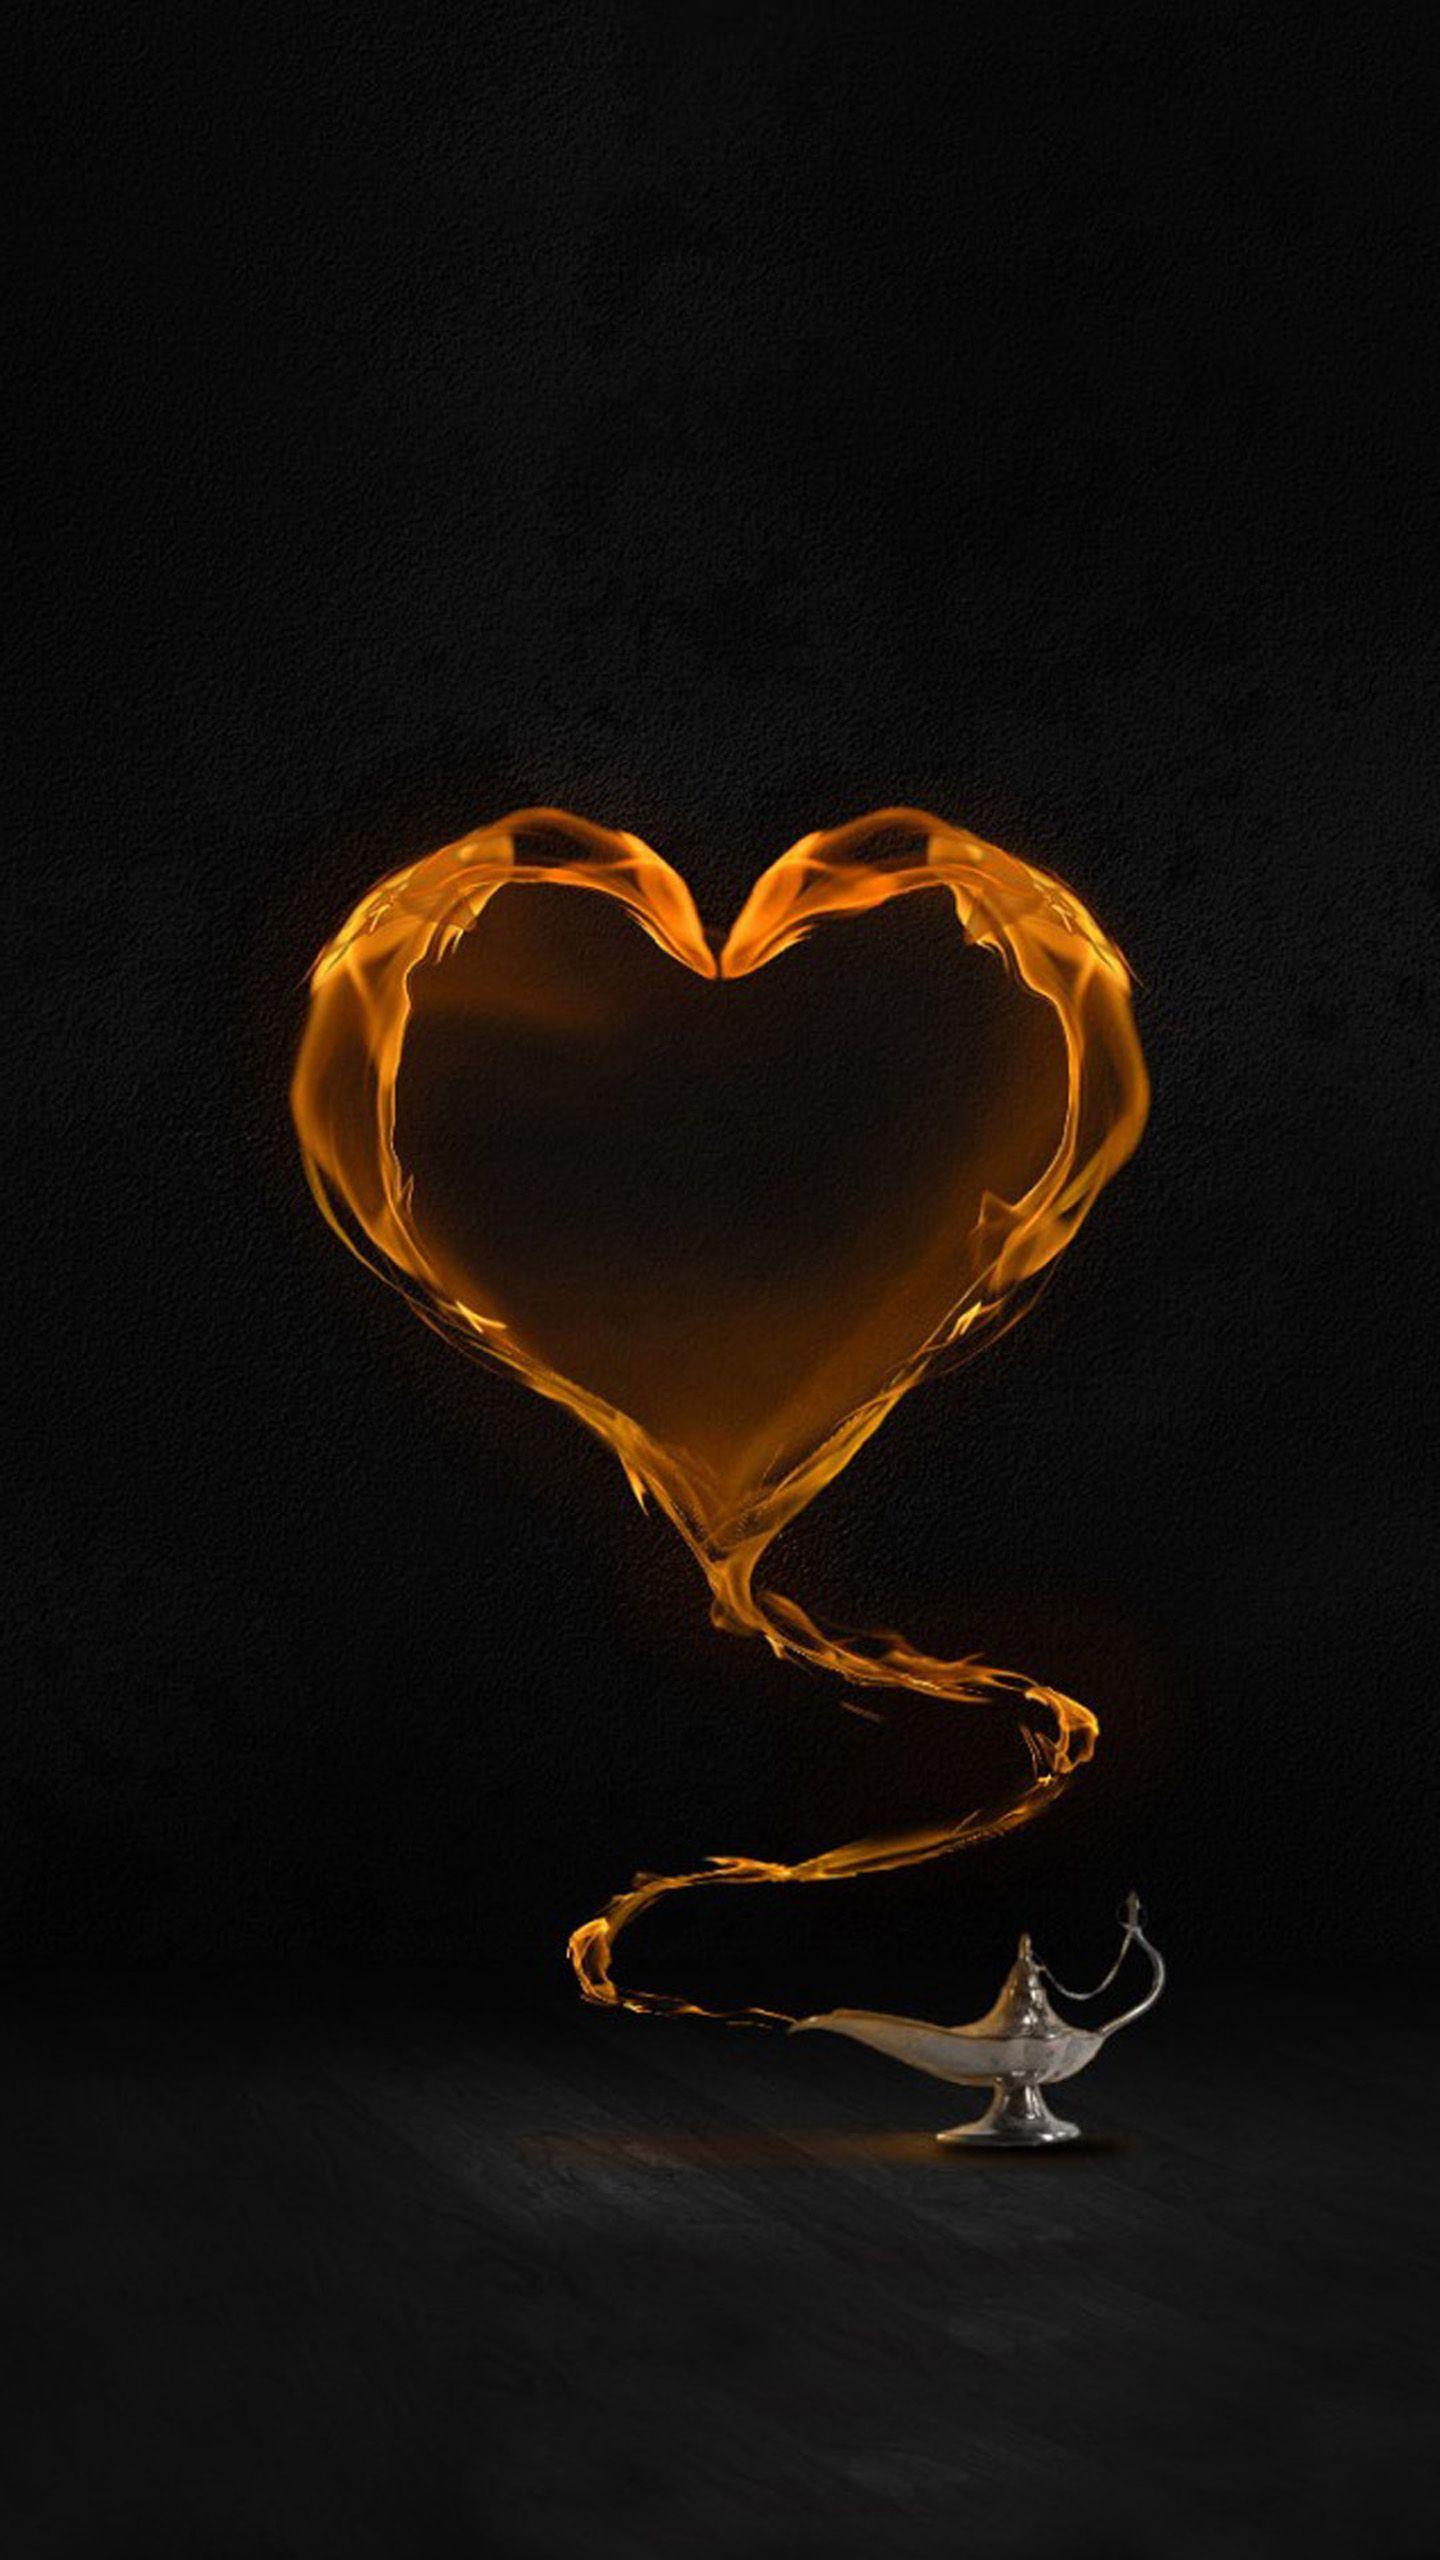 Fire Heart Galaxy S7 Wallpaper (1440x2560)